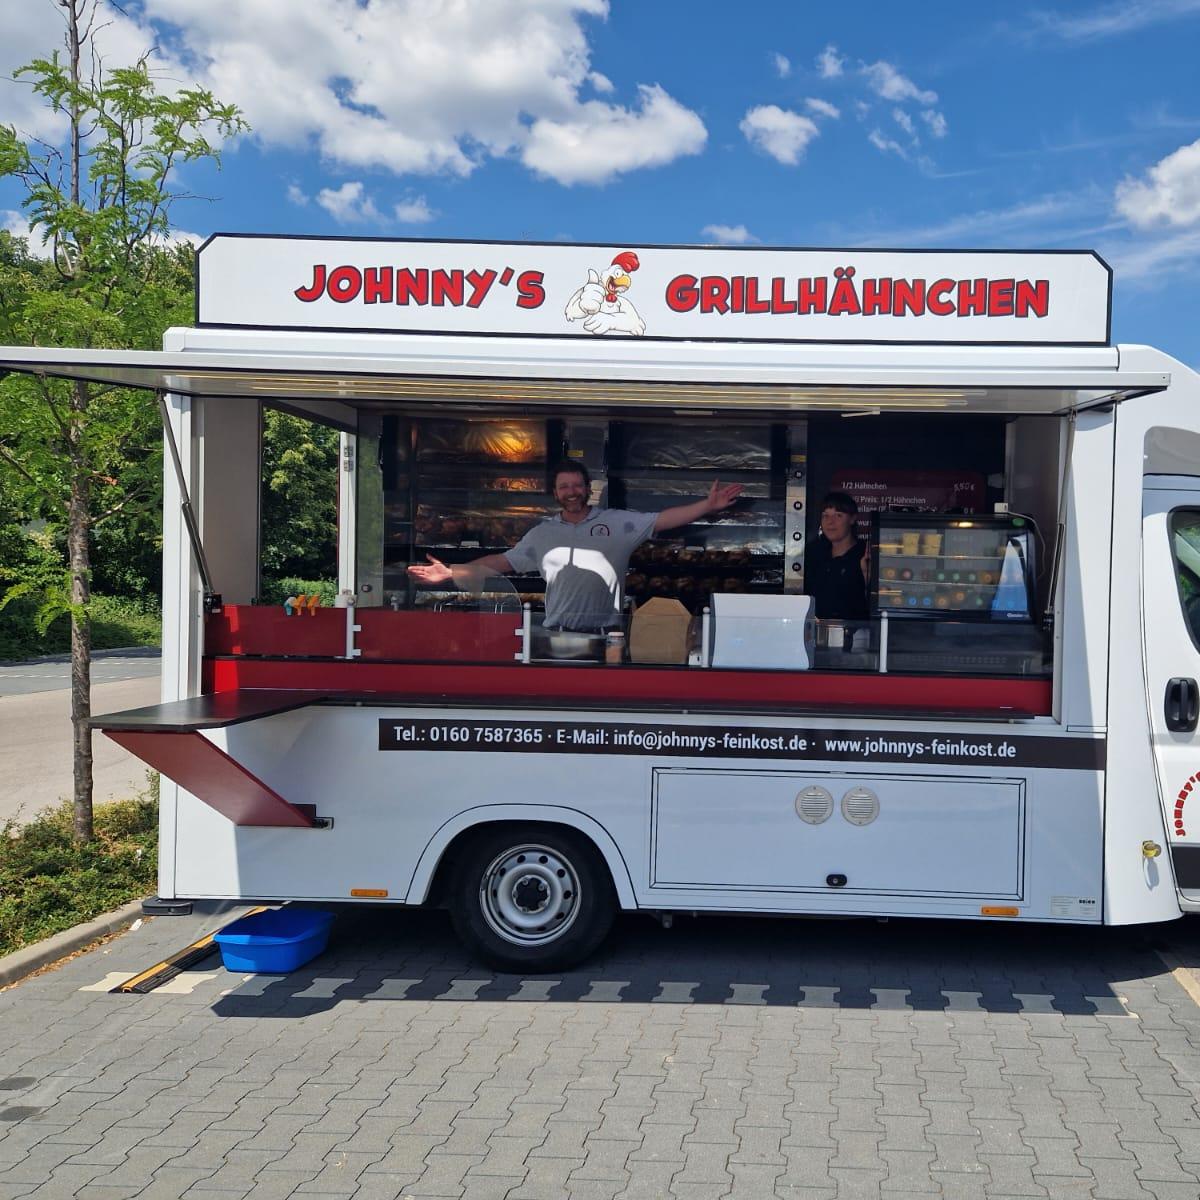 Restaurant "Johnnys Grillhähnchen" in Abenberg